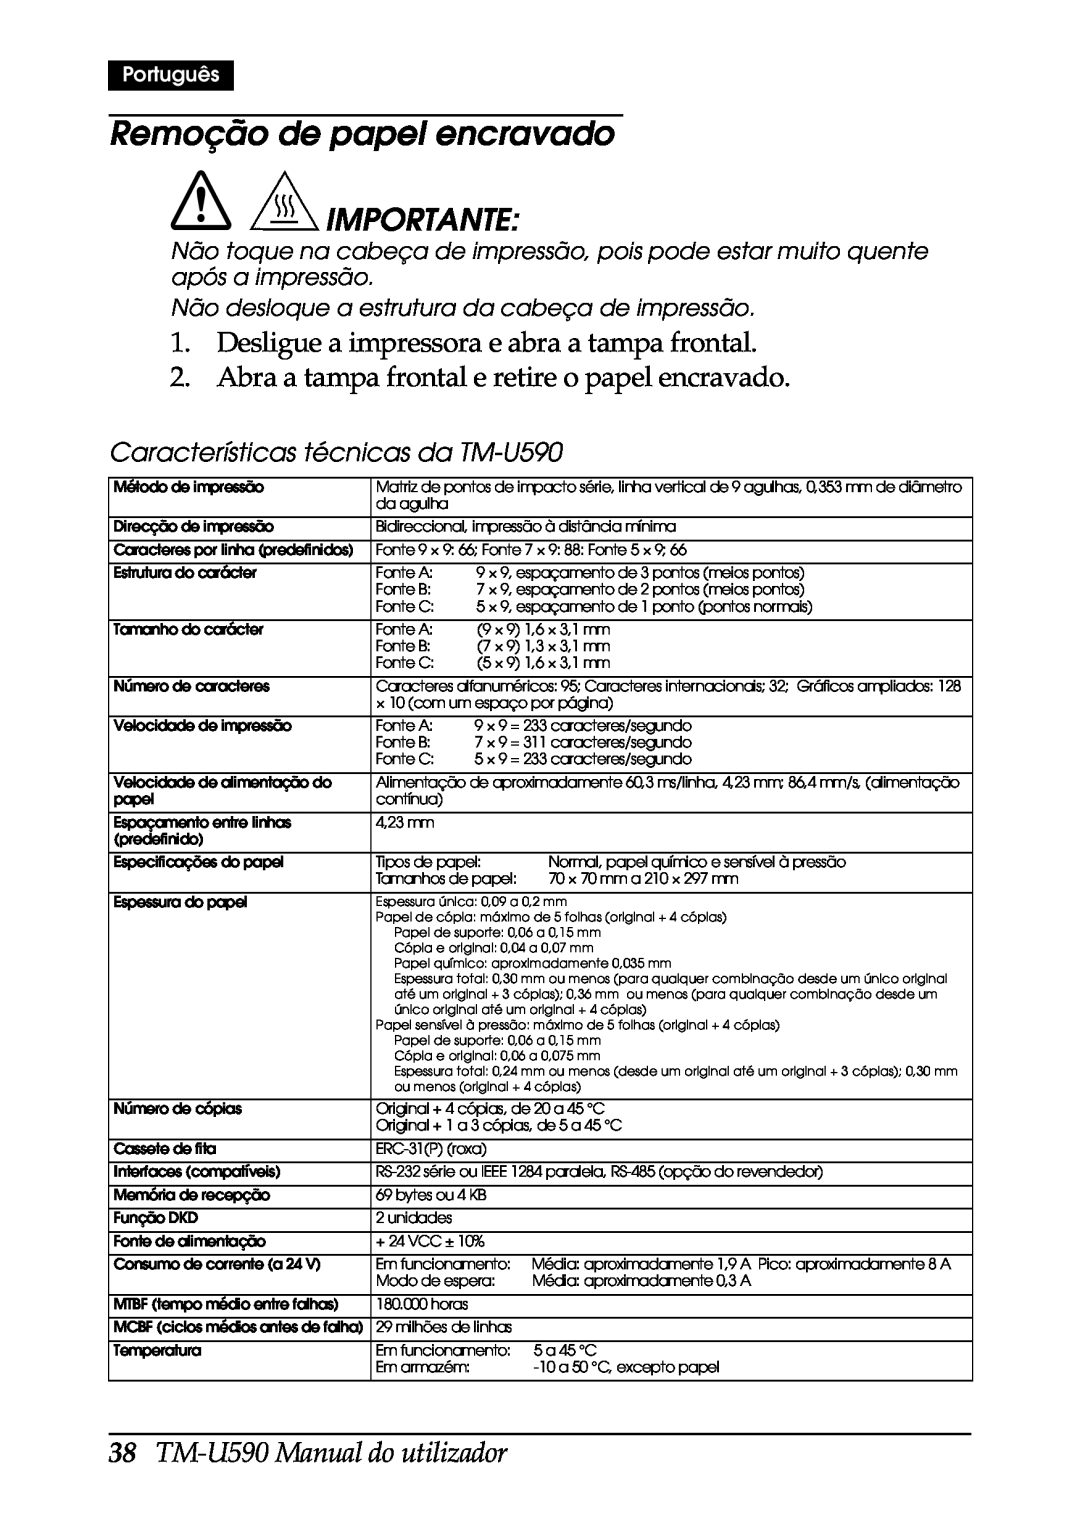 FARGO electronic user manual Remoção de papel encravado, TM-U590 Manual do utilizador, Importante, Português 